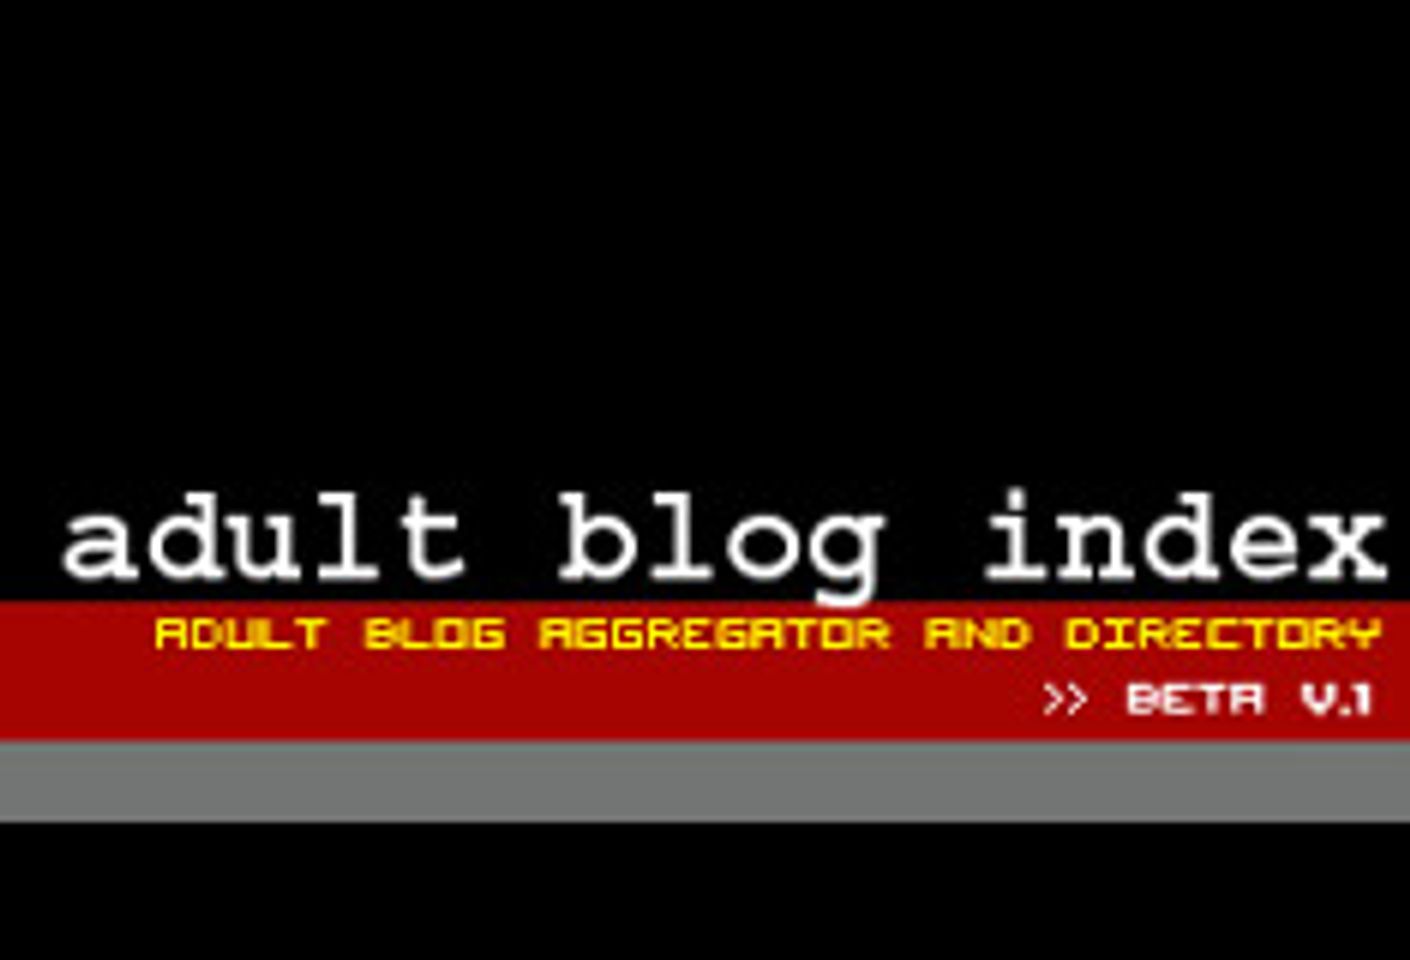 Adult Blog Index Released